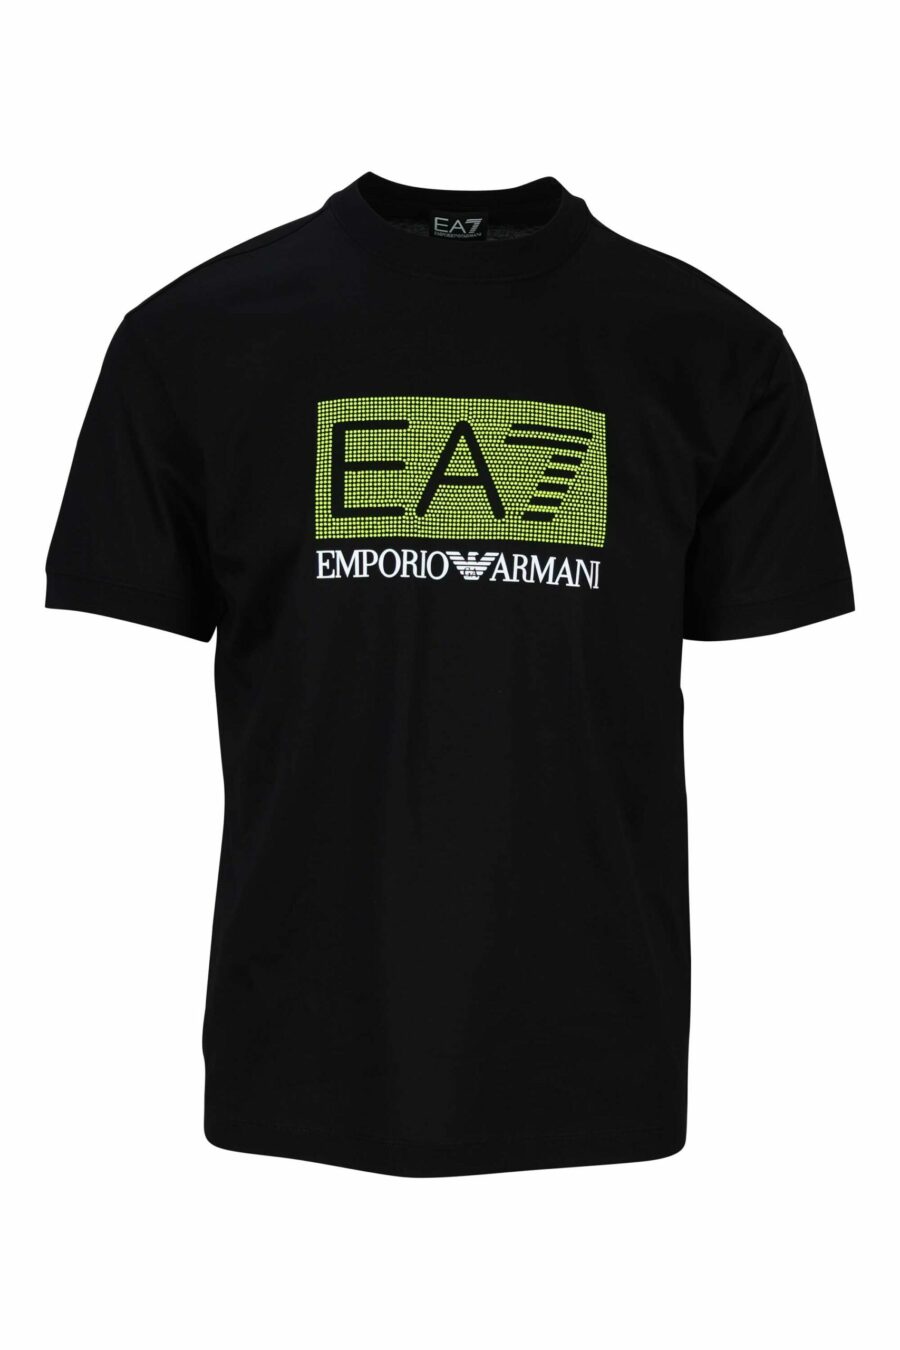 T-shirt preta com o maxilogo "lux identity" num quadrado verde - 8058947495726 à escala